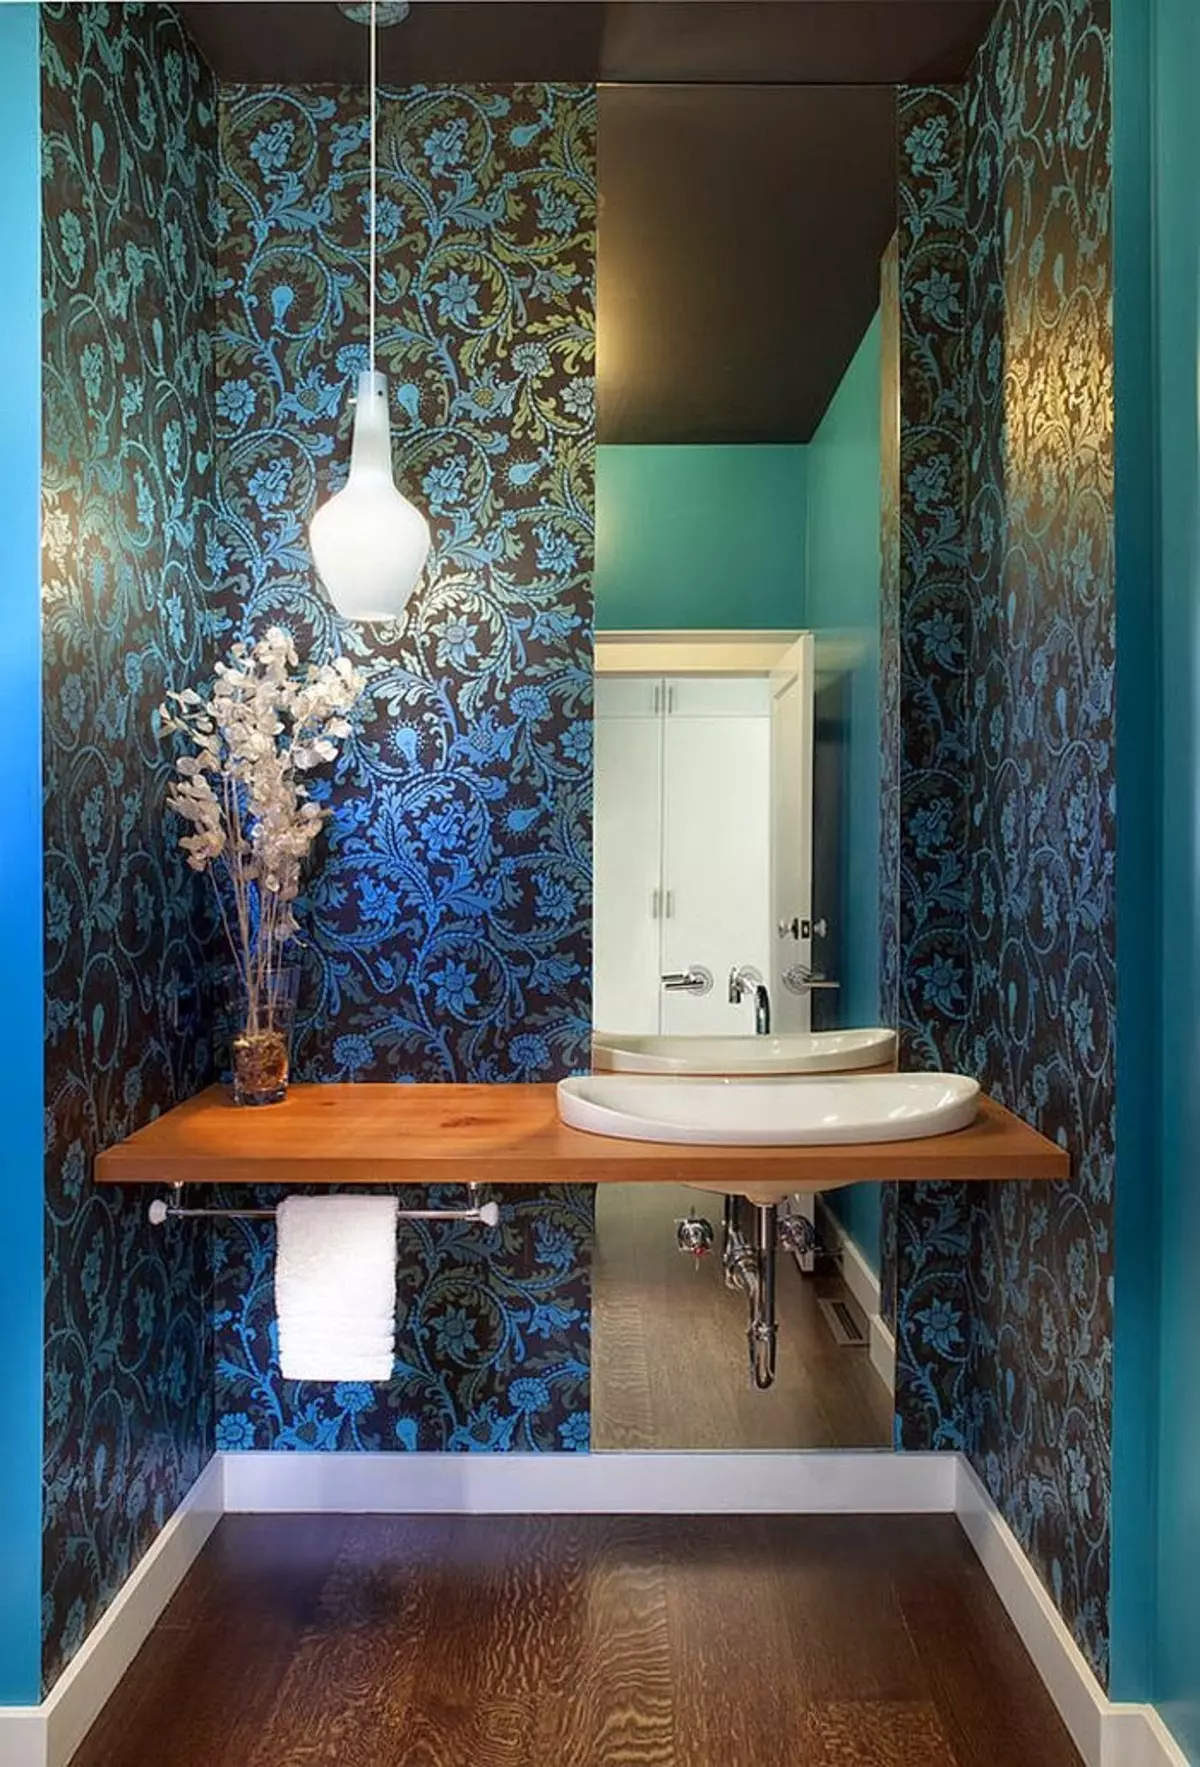 باتھ روم میں وال پیپر (120 فوٹو): باتھ روم کے لئے پنروک تصویر وال پیپر، واش قابل نمی مزاحم خود چپکنے والی وال پیپر اور شیشے کا سامان کی خصوصیات. کیا بہتر ہے؟ جائزے 10155_15